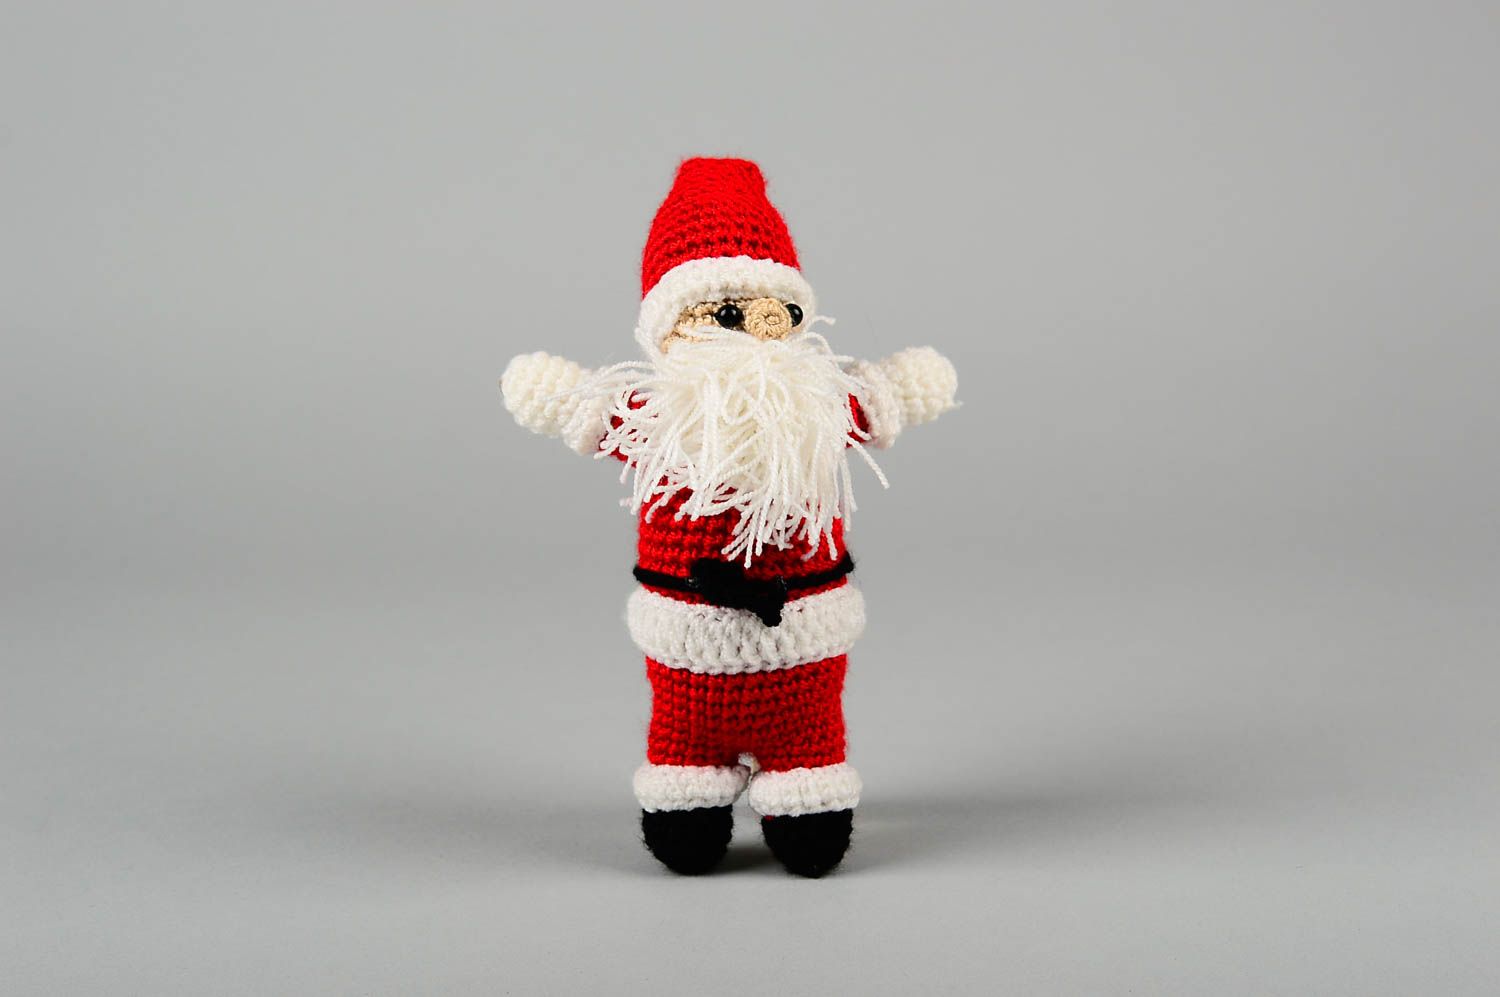 Мягкая игрушка ручной работы детская игрушка крючком красивая игрушка Дед Мороз фото 1